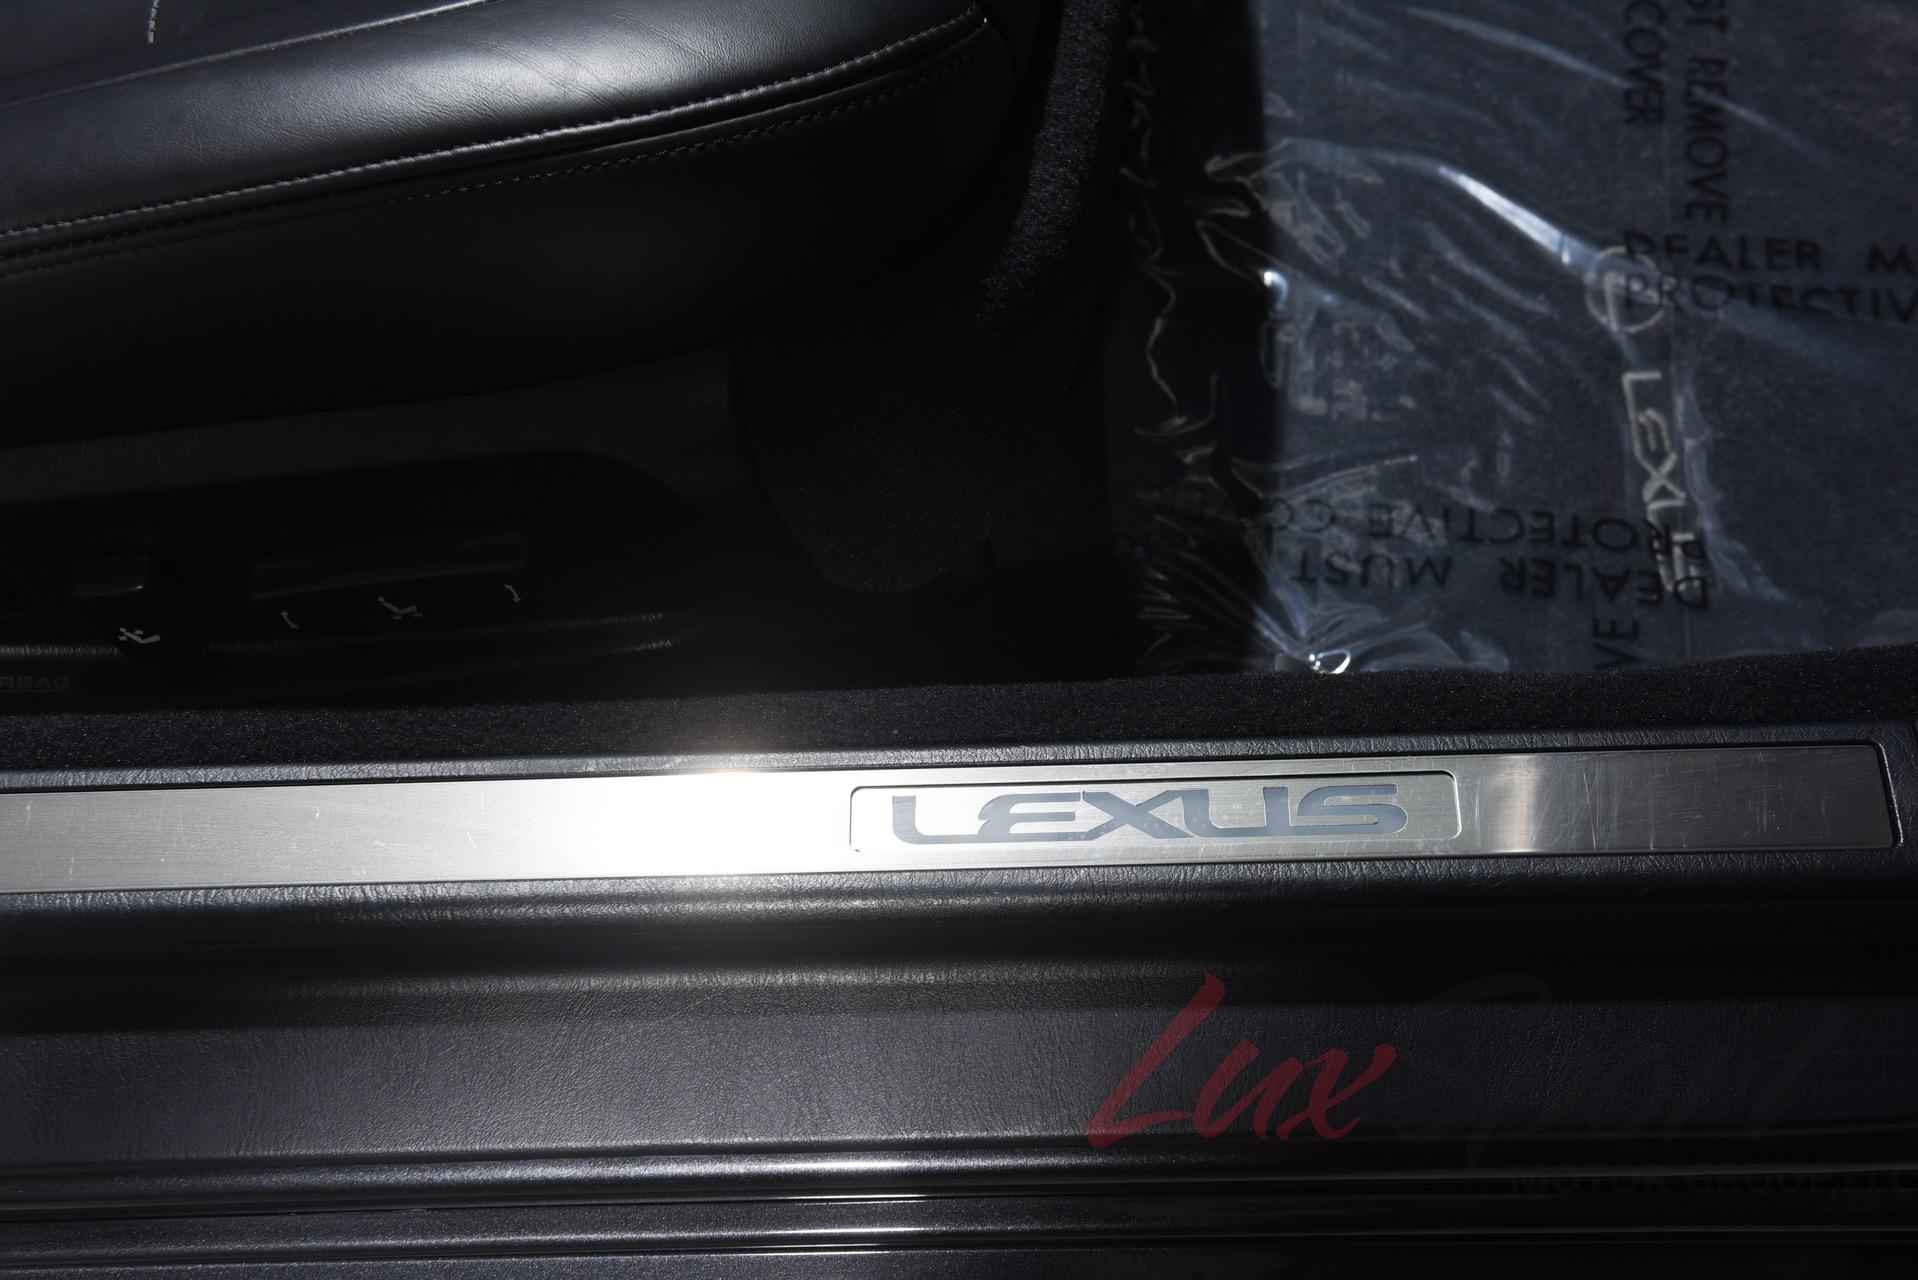 Used 2006 Lexus SC 430  | Plainview, NY